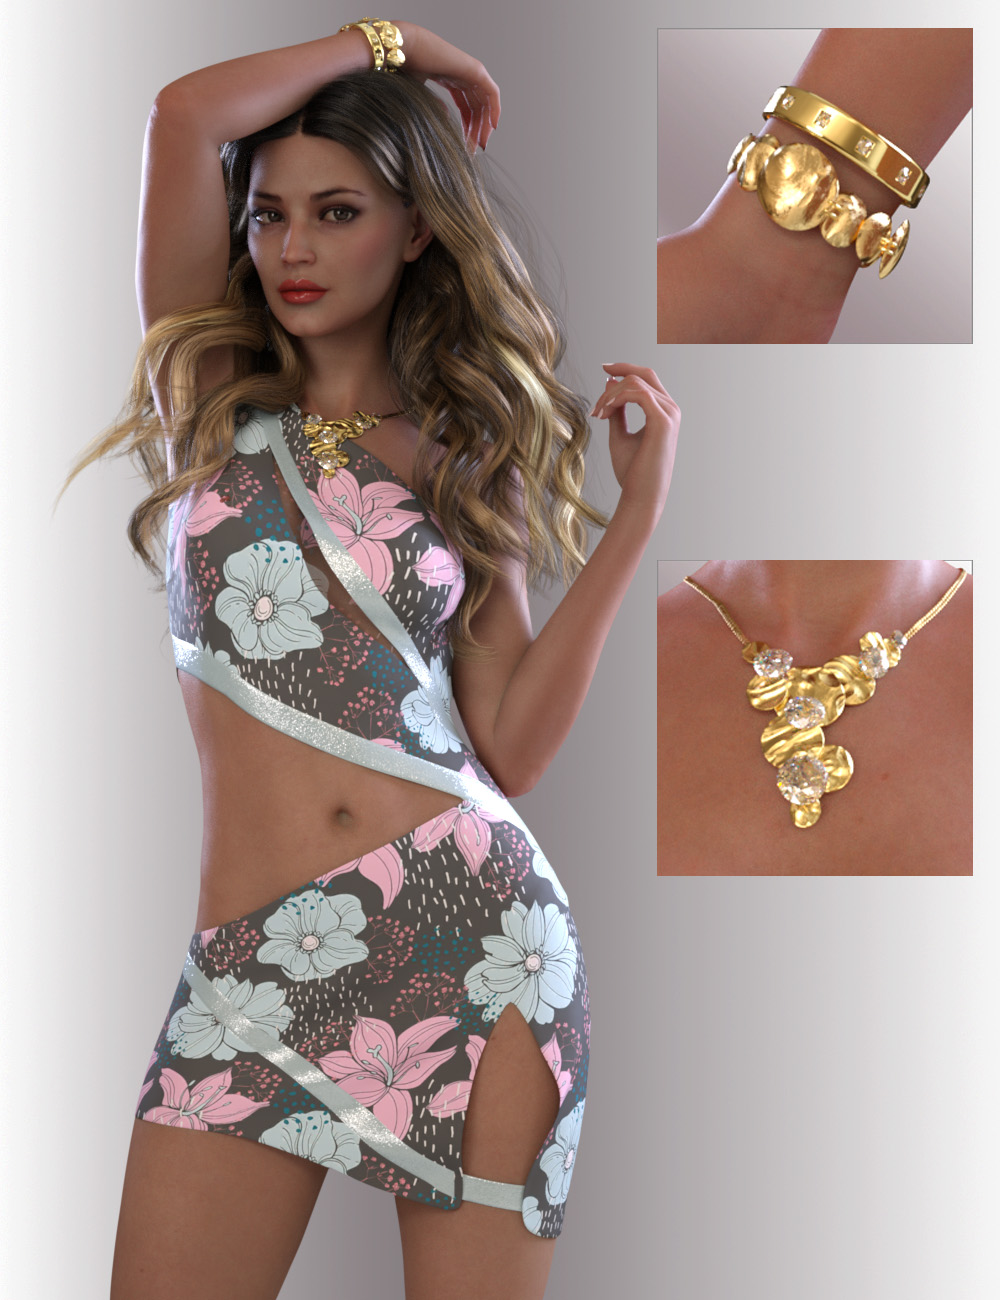 dForce Ninny Dress for Genesis 8.1 Females by: OnnelArryn, 3D Models by Daz 3D